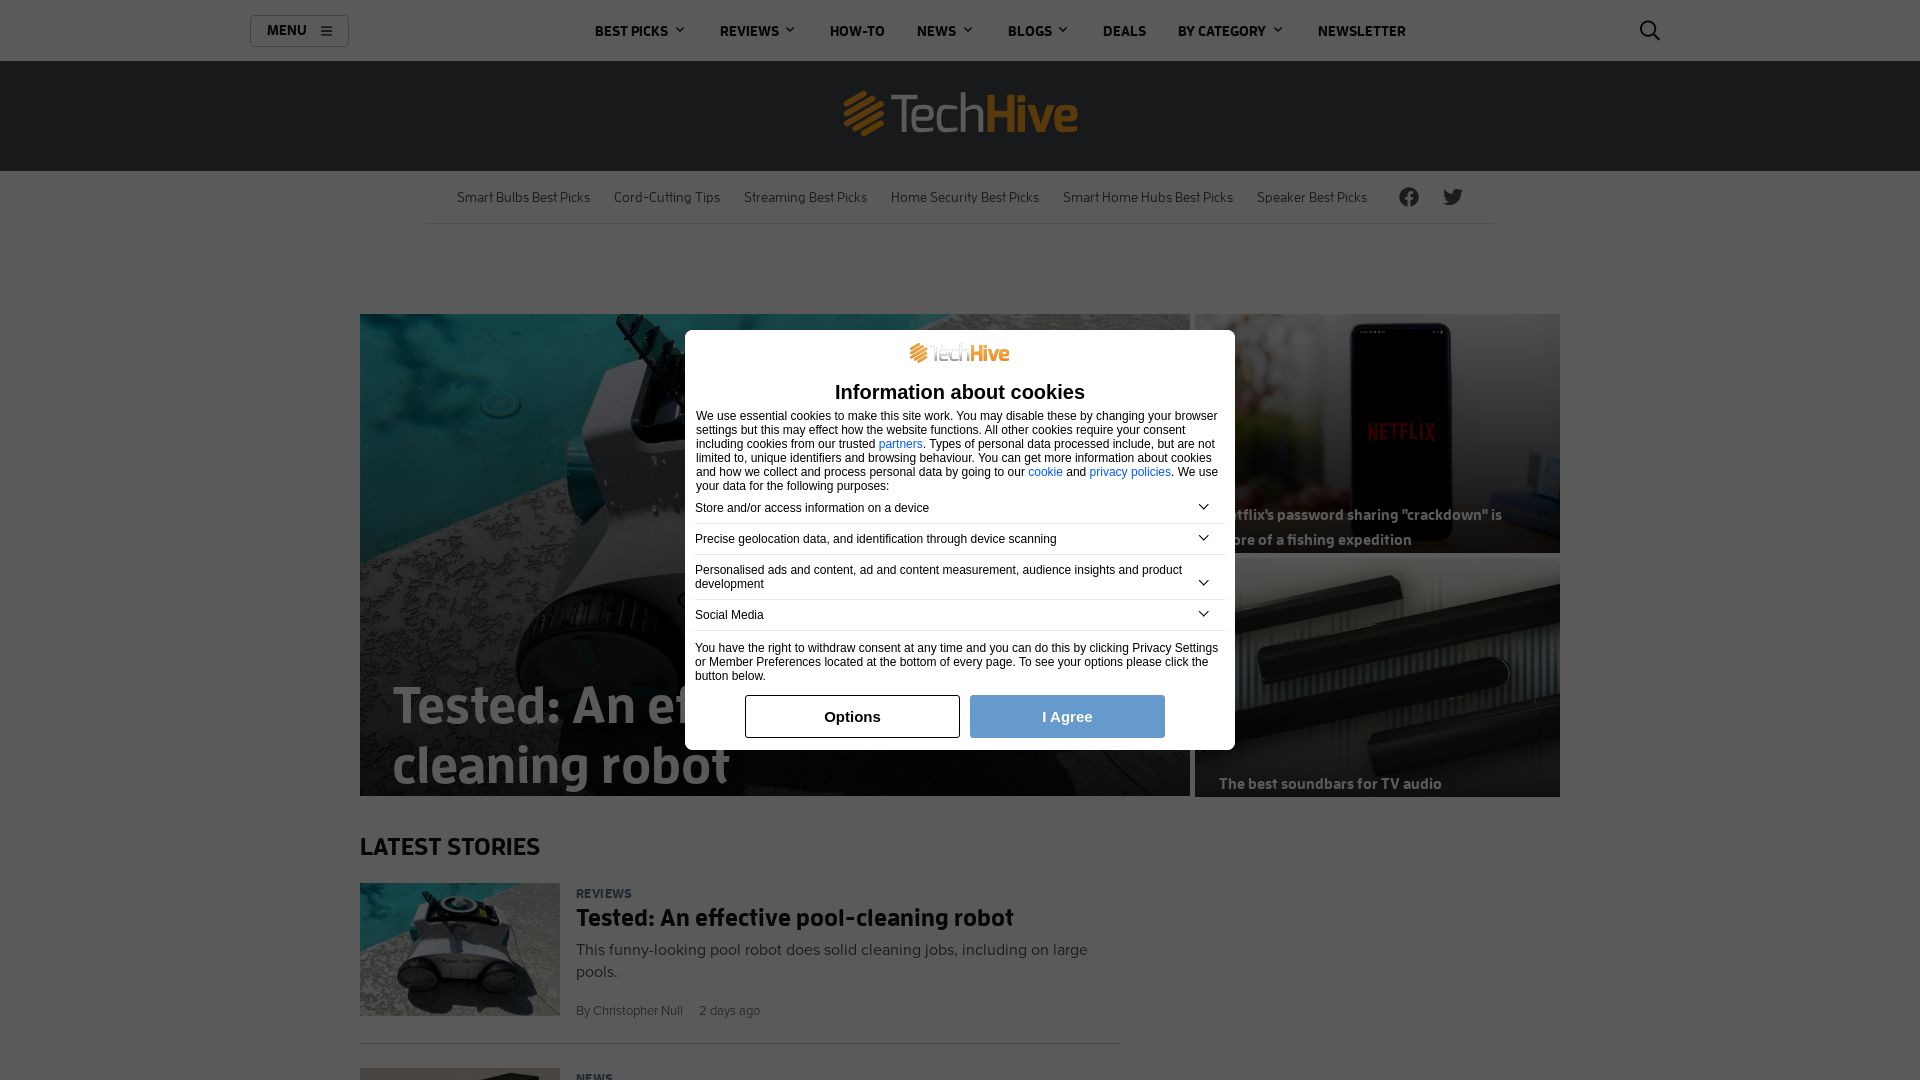 Website status techhive.com is   ONLINE